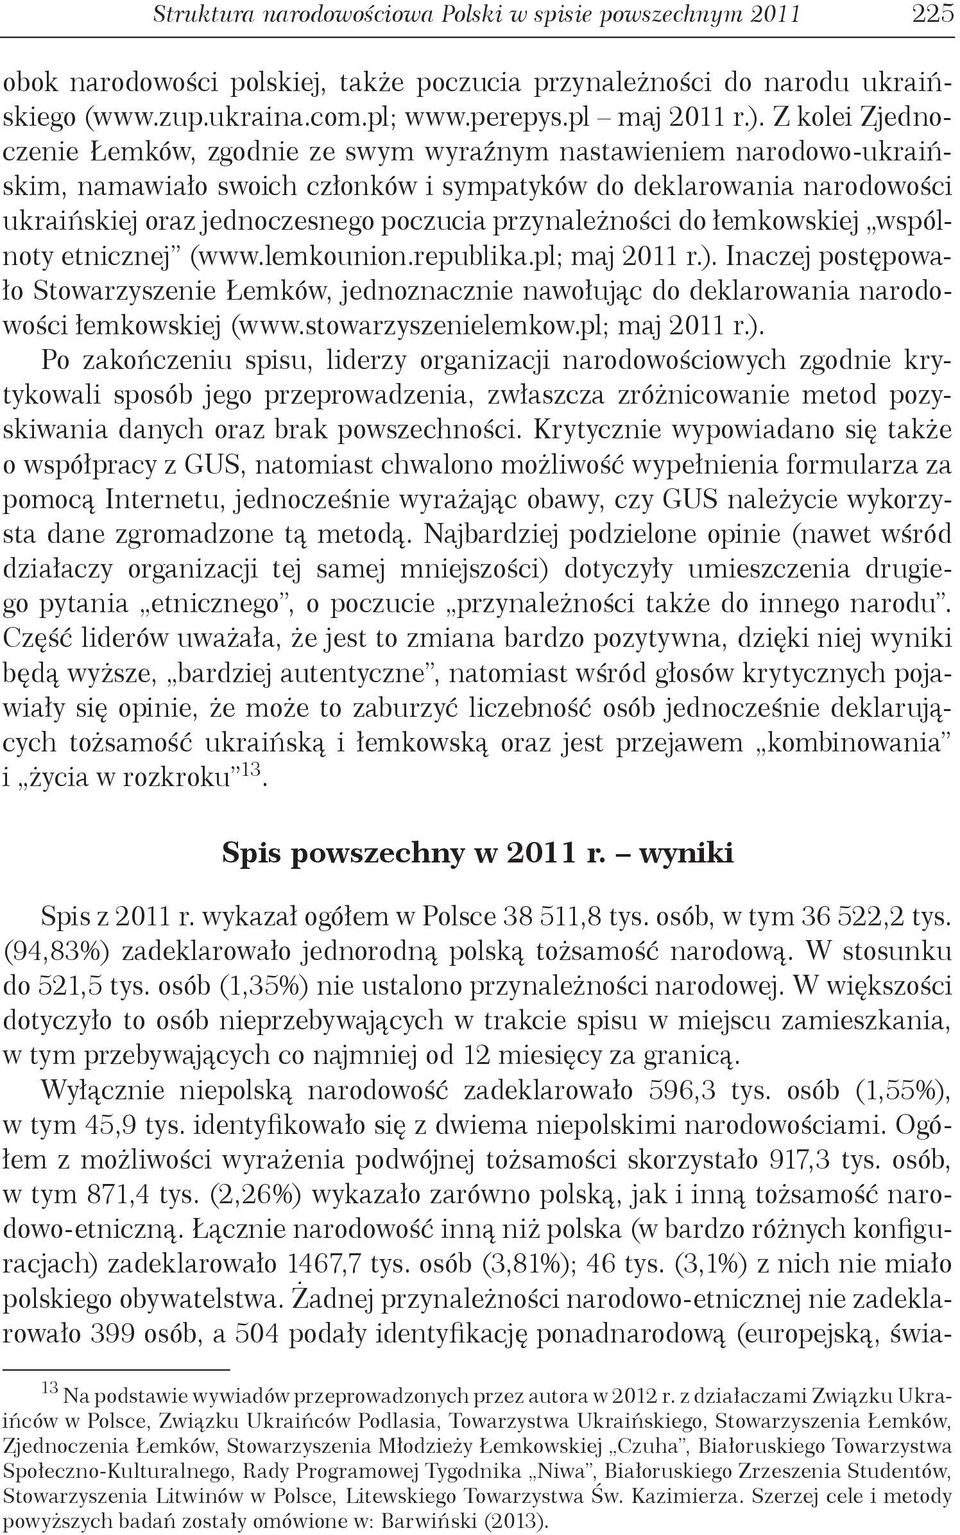 przynależności do łemkowskiej wspólnoty etnicznej (www.lemkounion.republika.pl; maj 2011 r.).